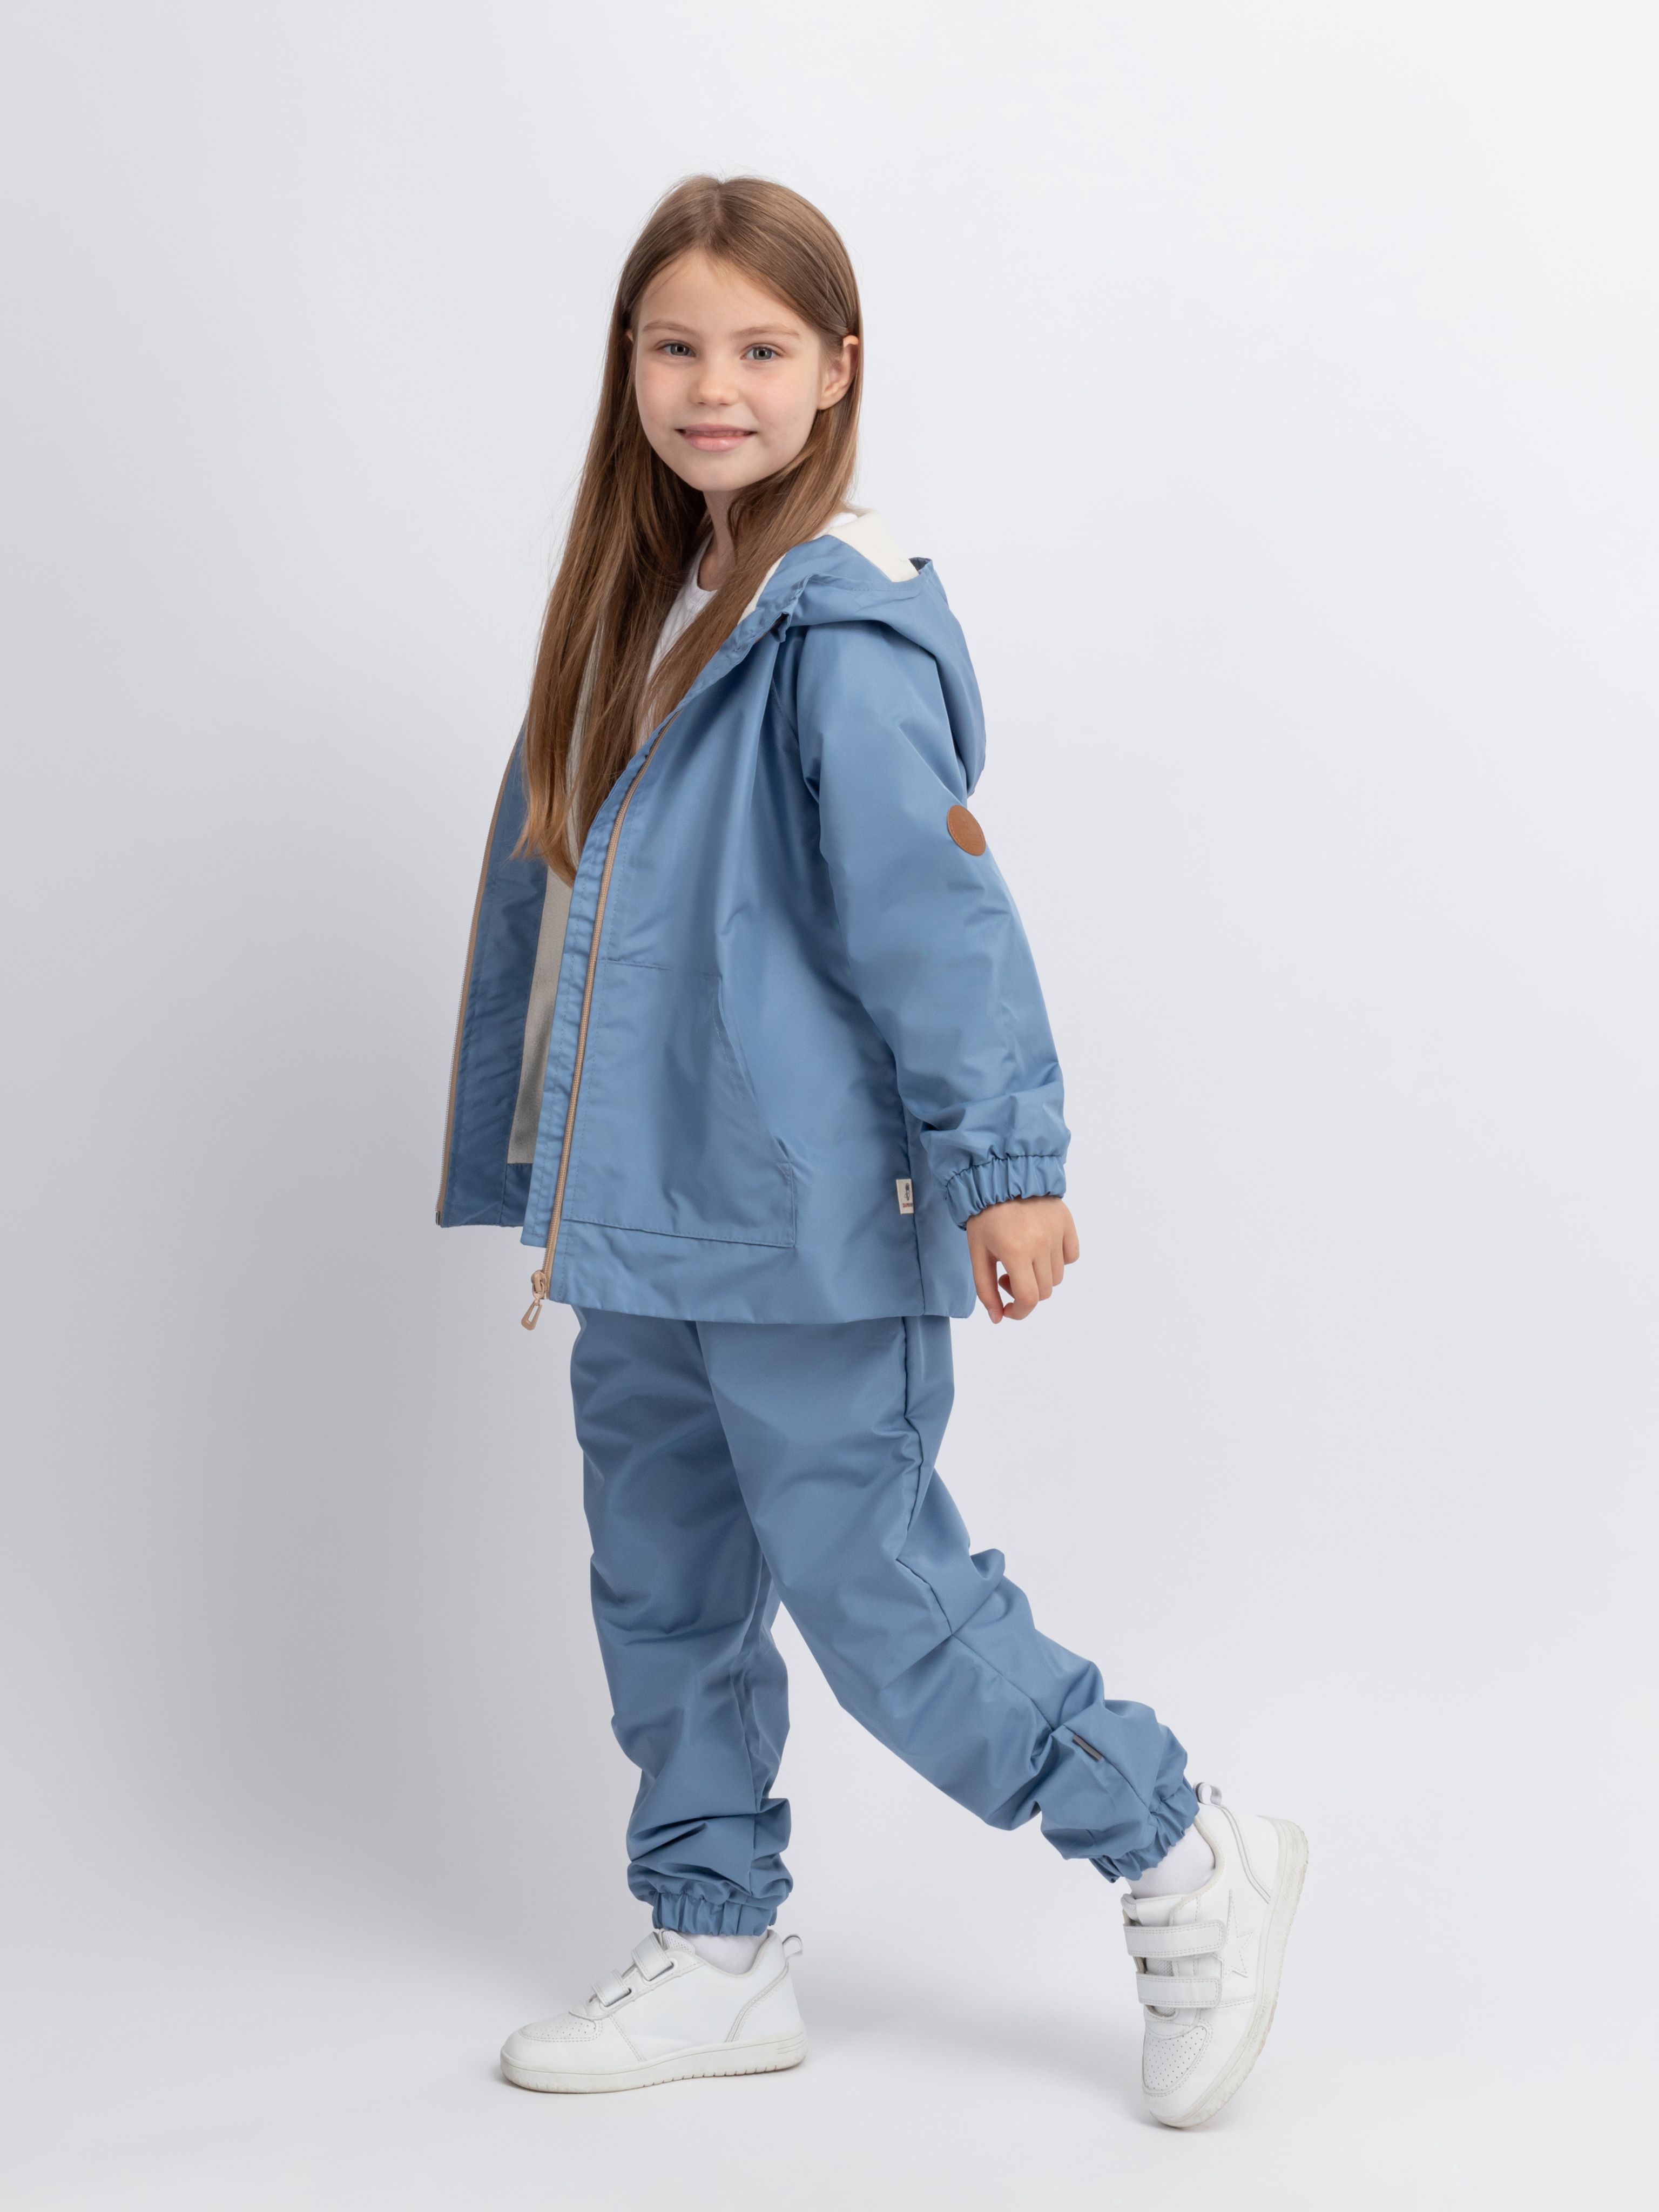 Комплект детской верхней одежды Даримир Велта, серо-голубой, 92